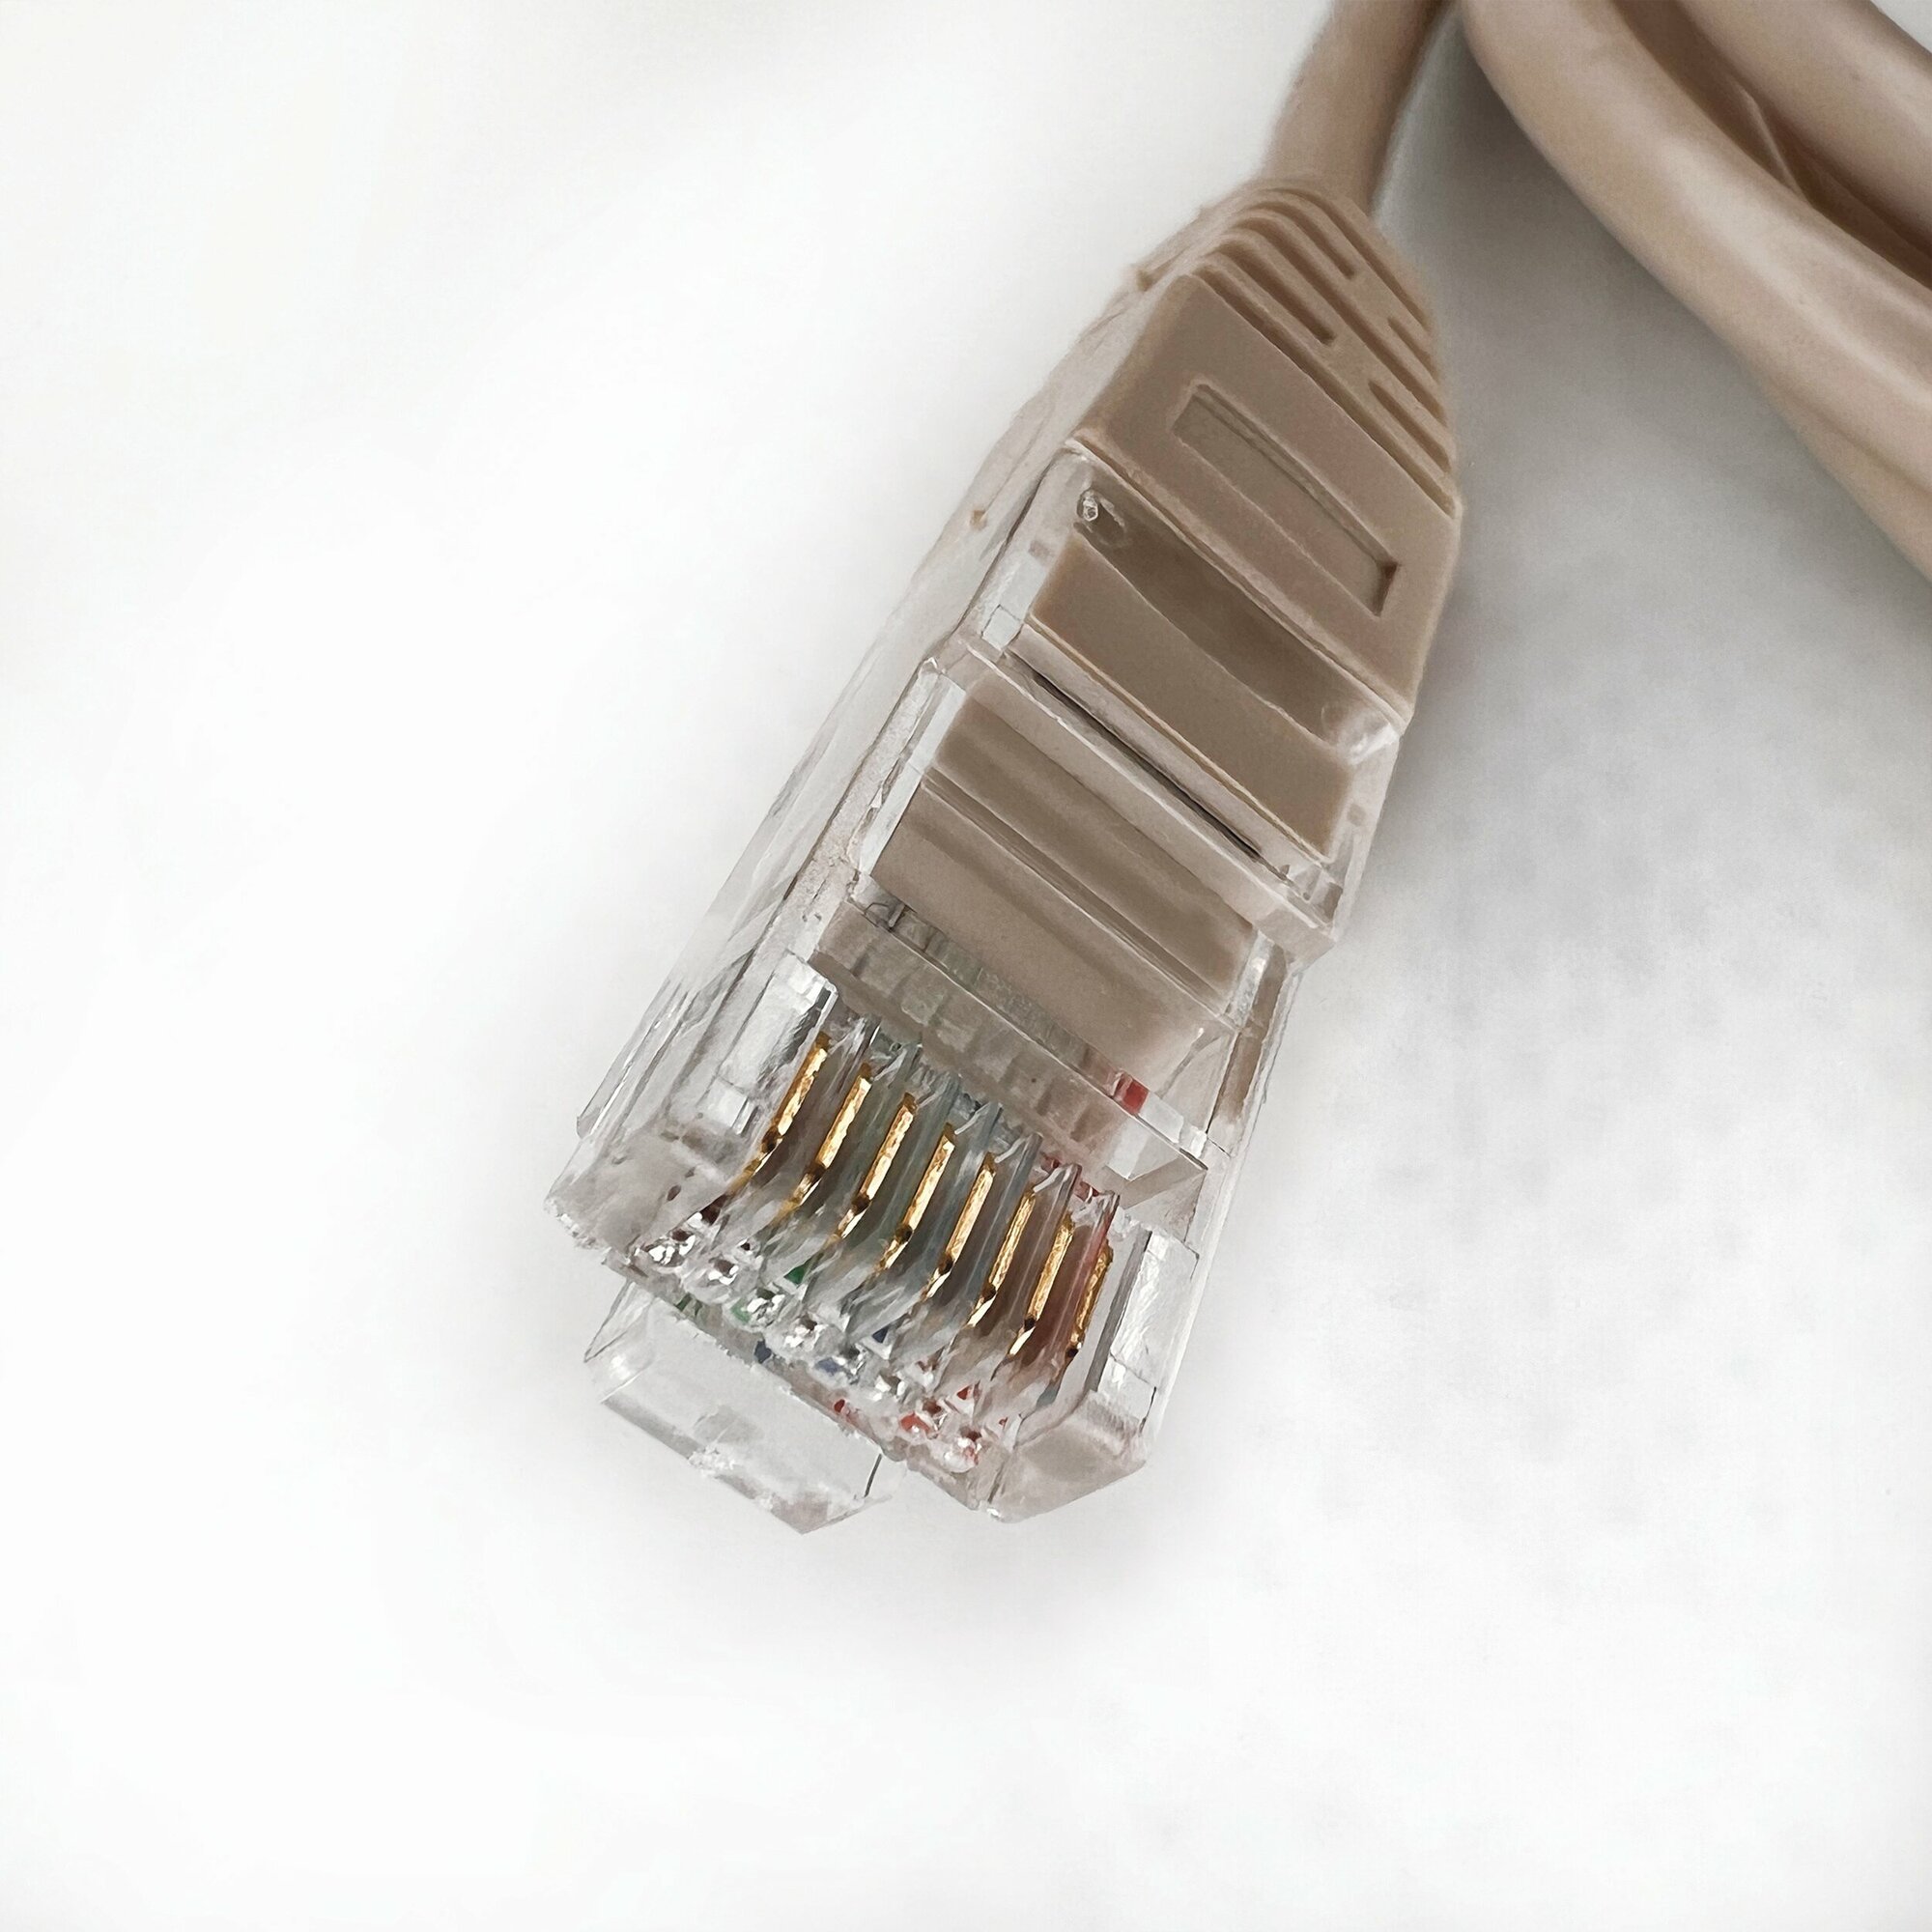 Патч корд 15 м Голд Мастер UTP 5е RJ45 интернет кабель 15 метров LAN сетевой Ethernet патчкорд серый (NA102--15M), контакты blade с позолотой 03FU